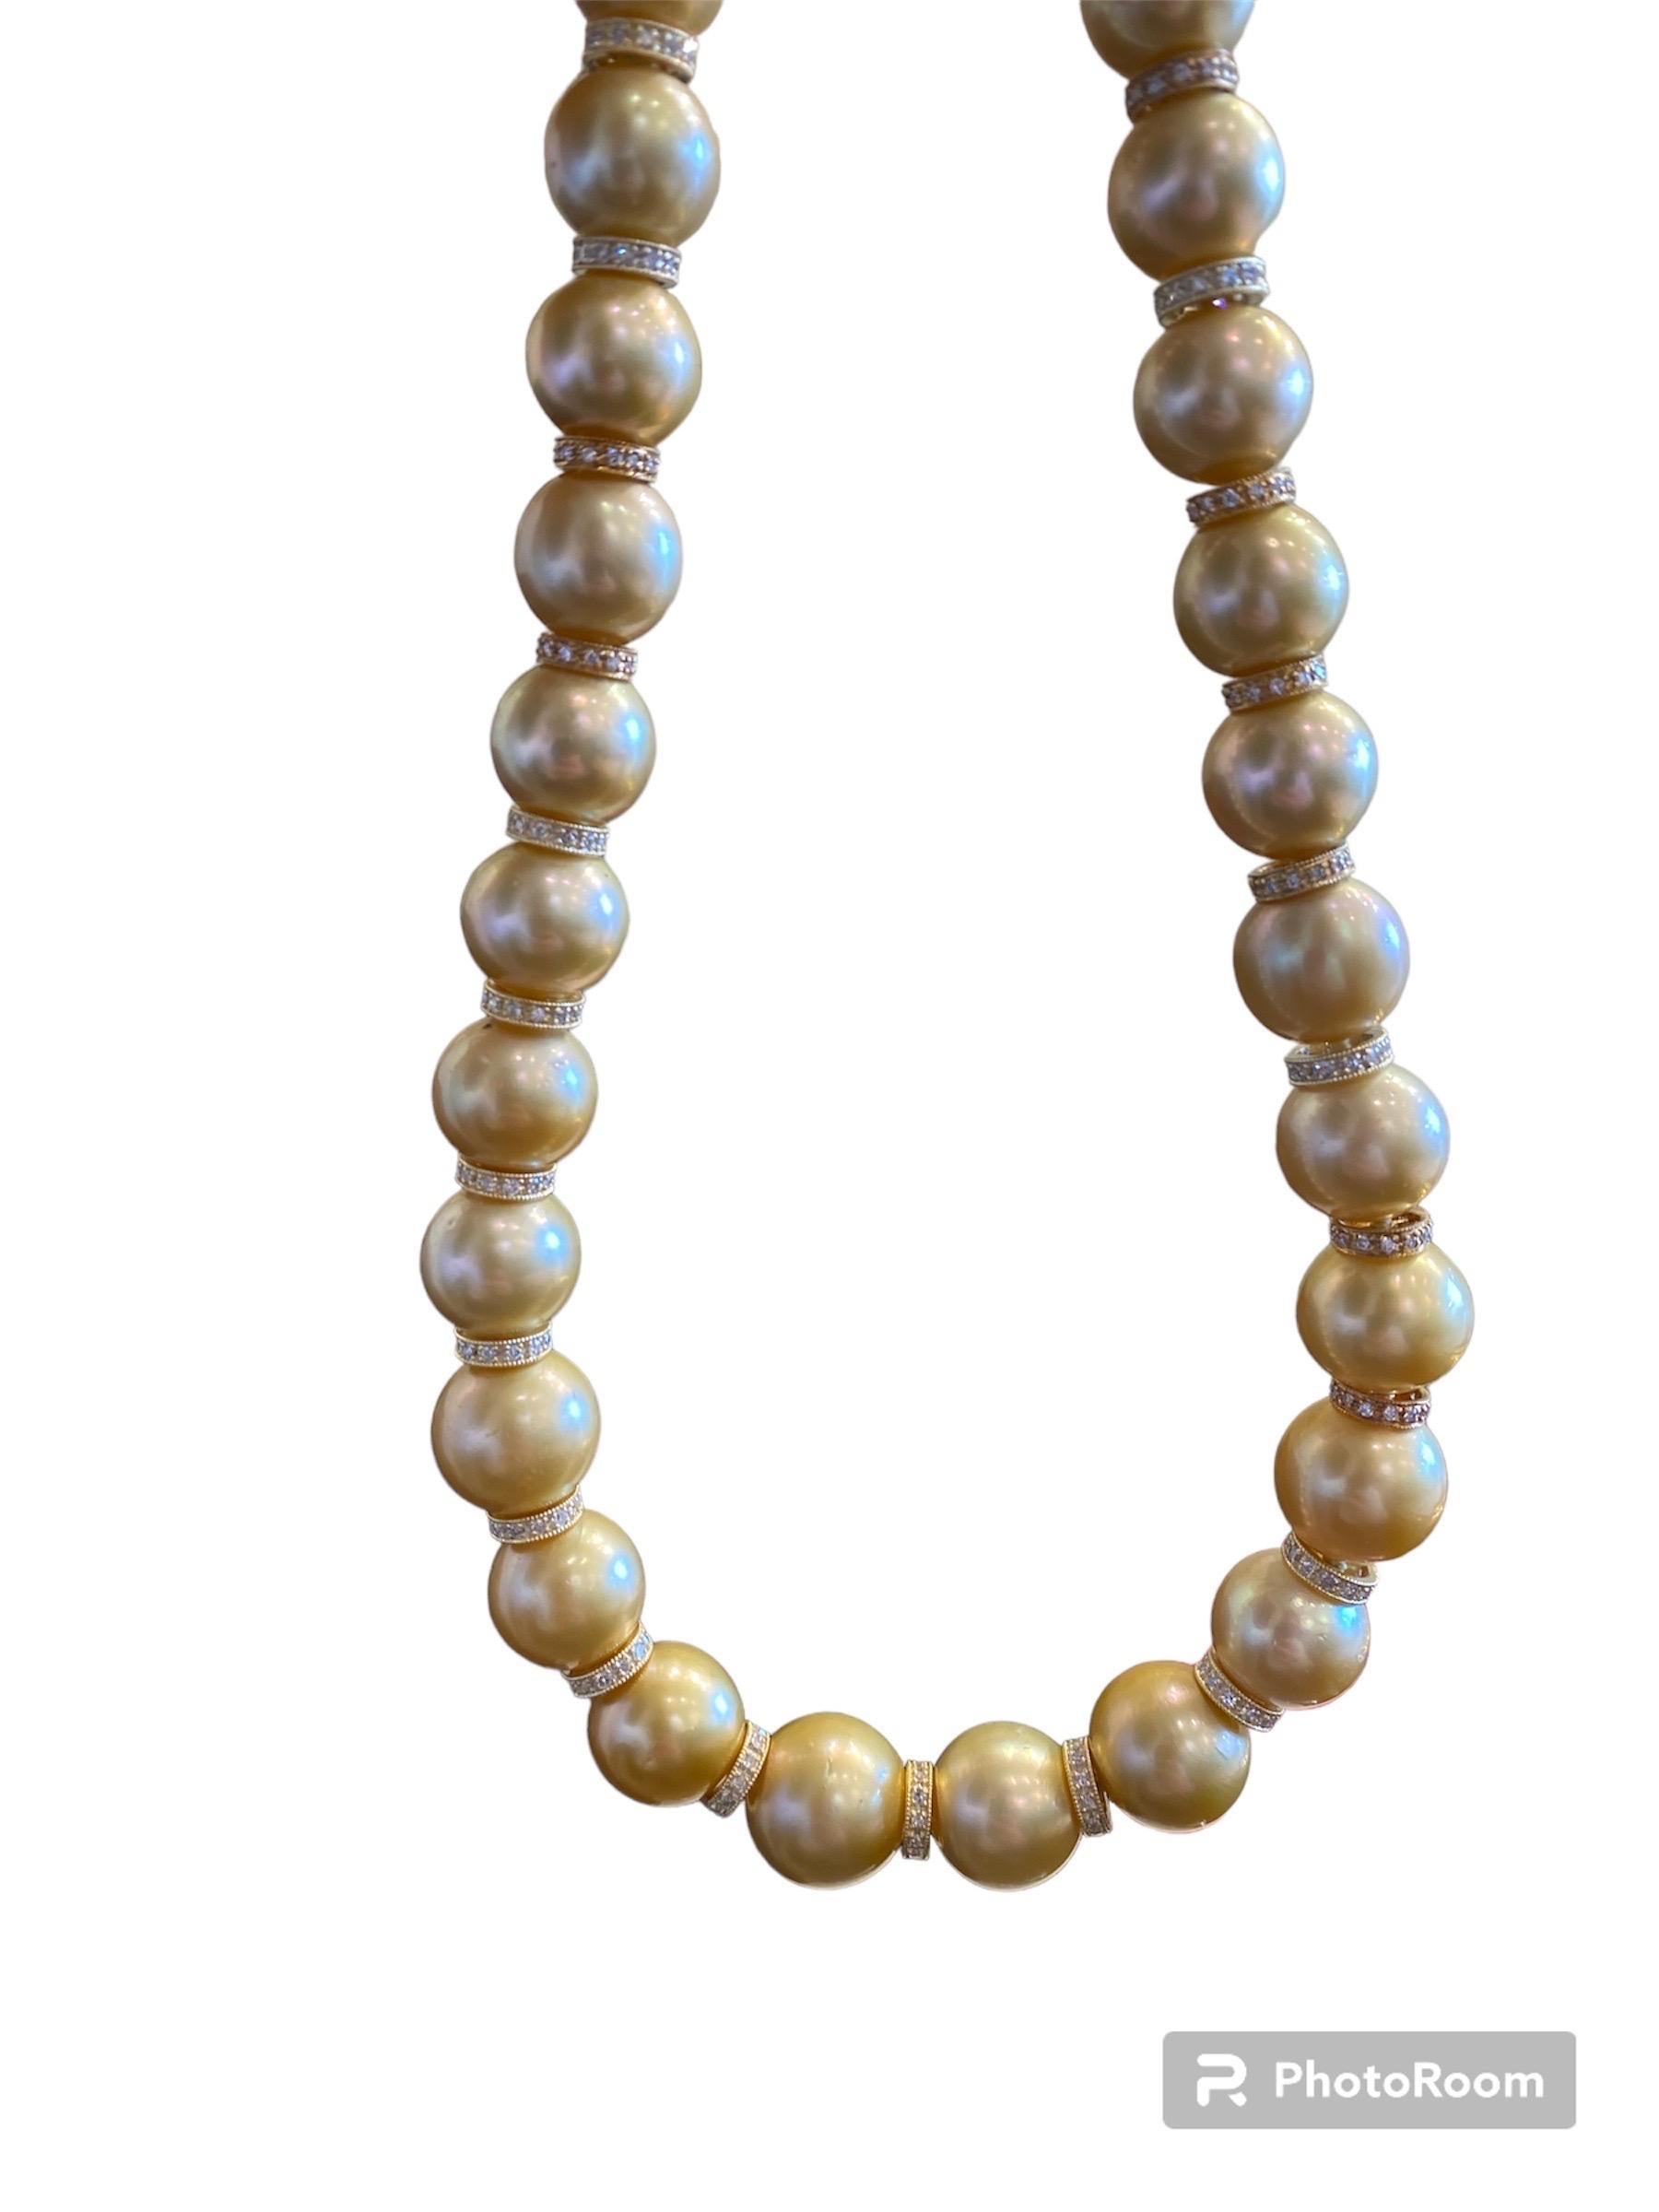 Ce rang exquis de perles semi-baroques, rondes et dorées des mers du Sud est absolument stupéfiant ! Comprend de magnifiques perles dont le diamètre varie de 13,00 mm à 15,00 mm, toutes d'un lustre supérieur. Elles ont été enfilées à la main sur un